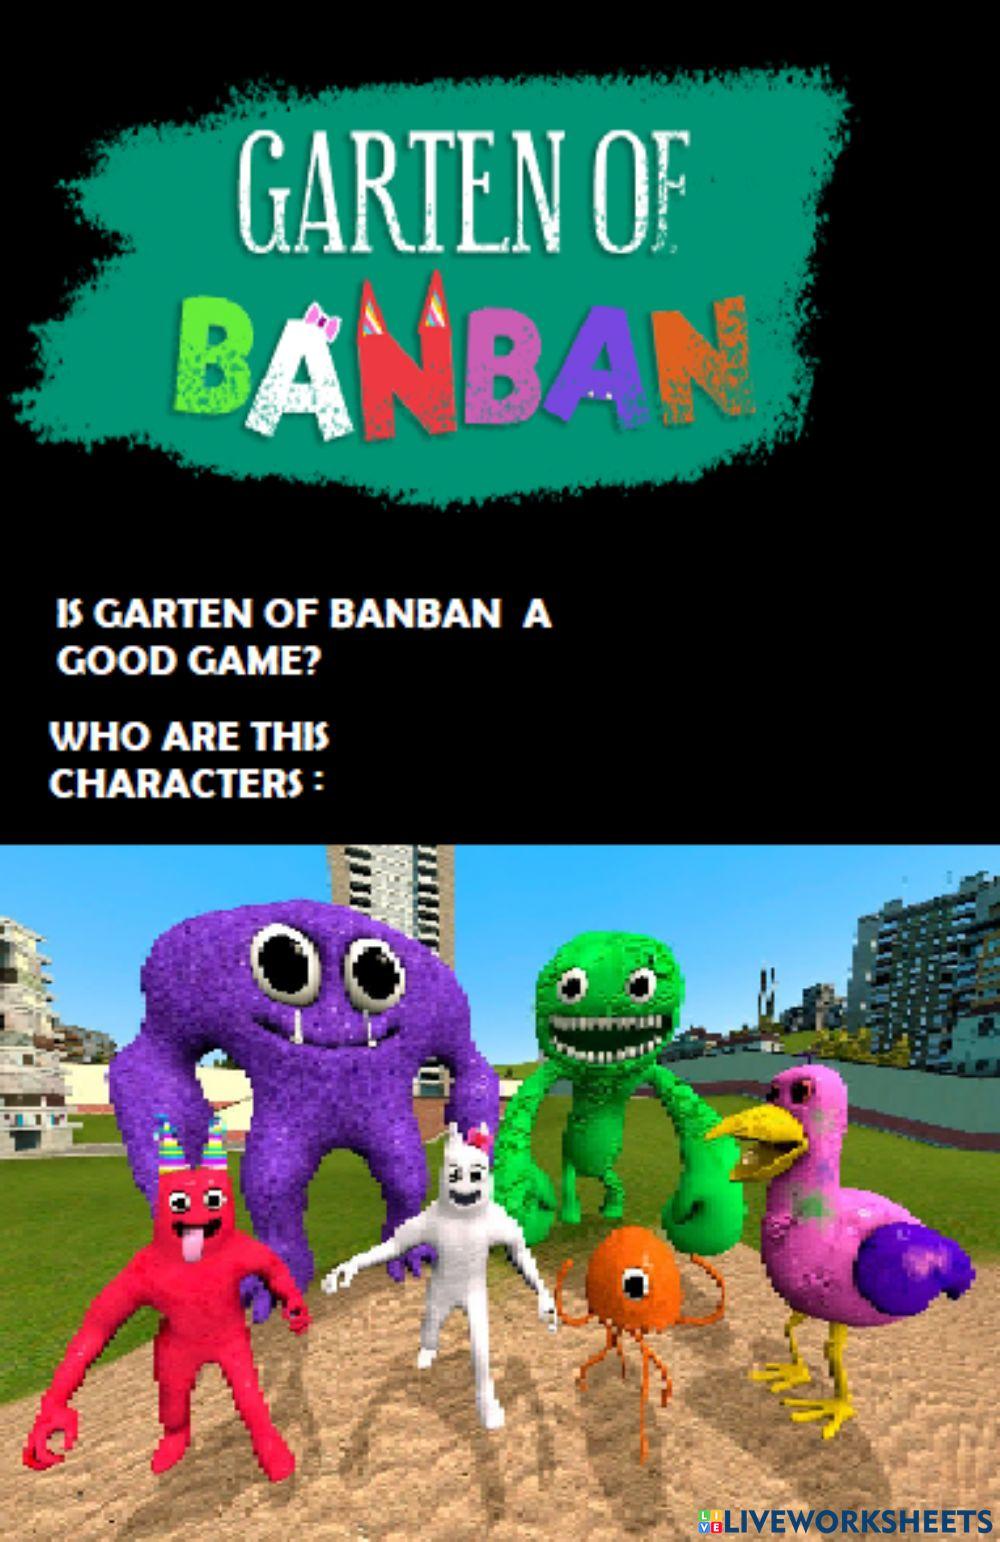 Garten of banban